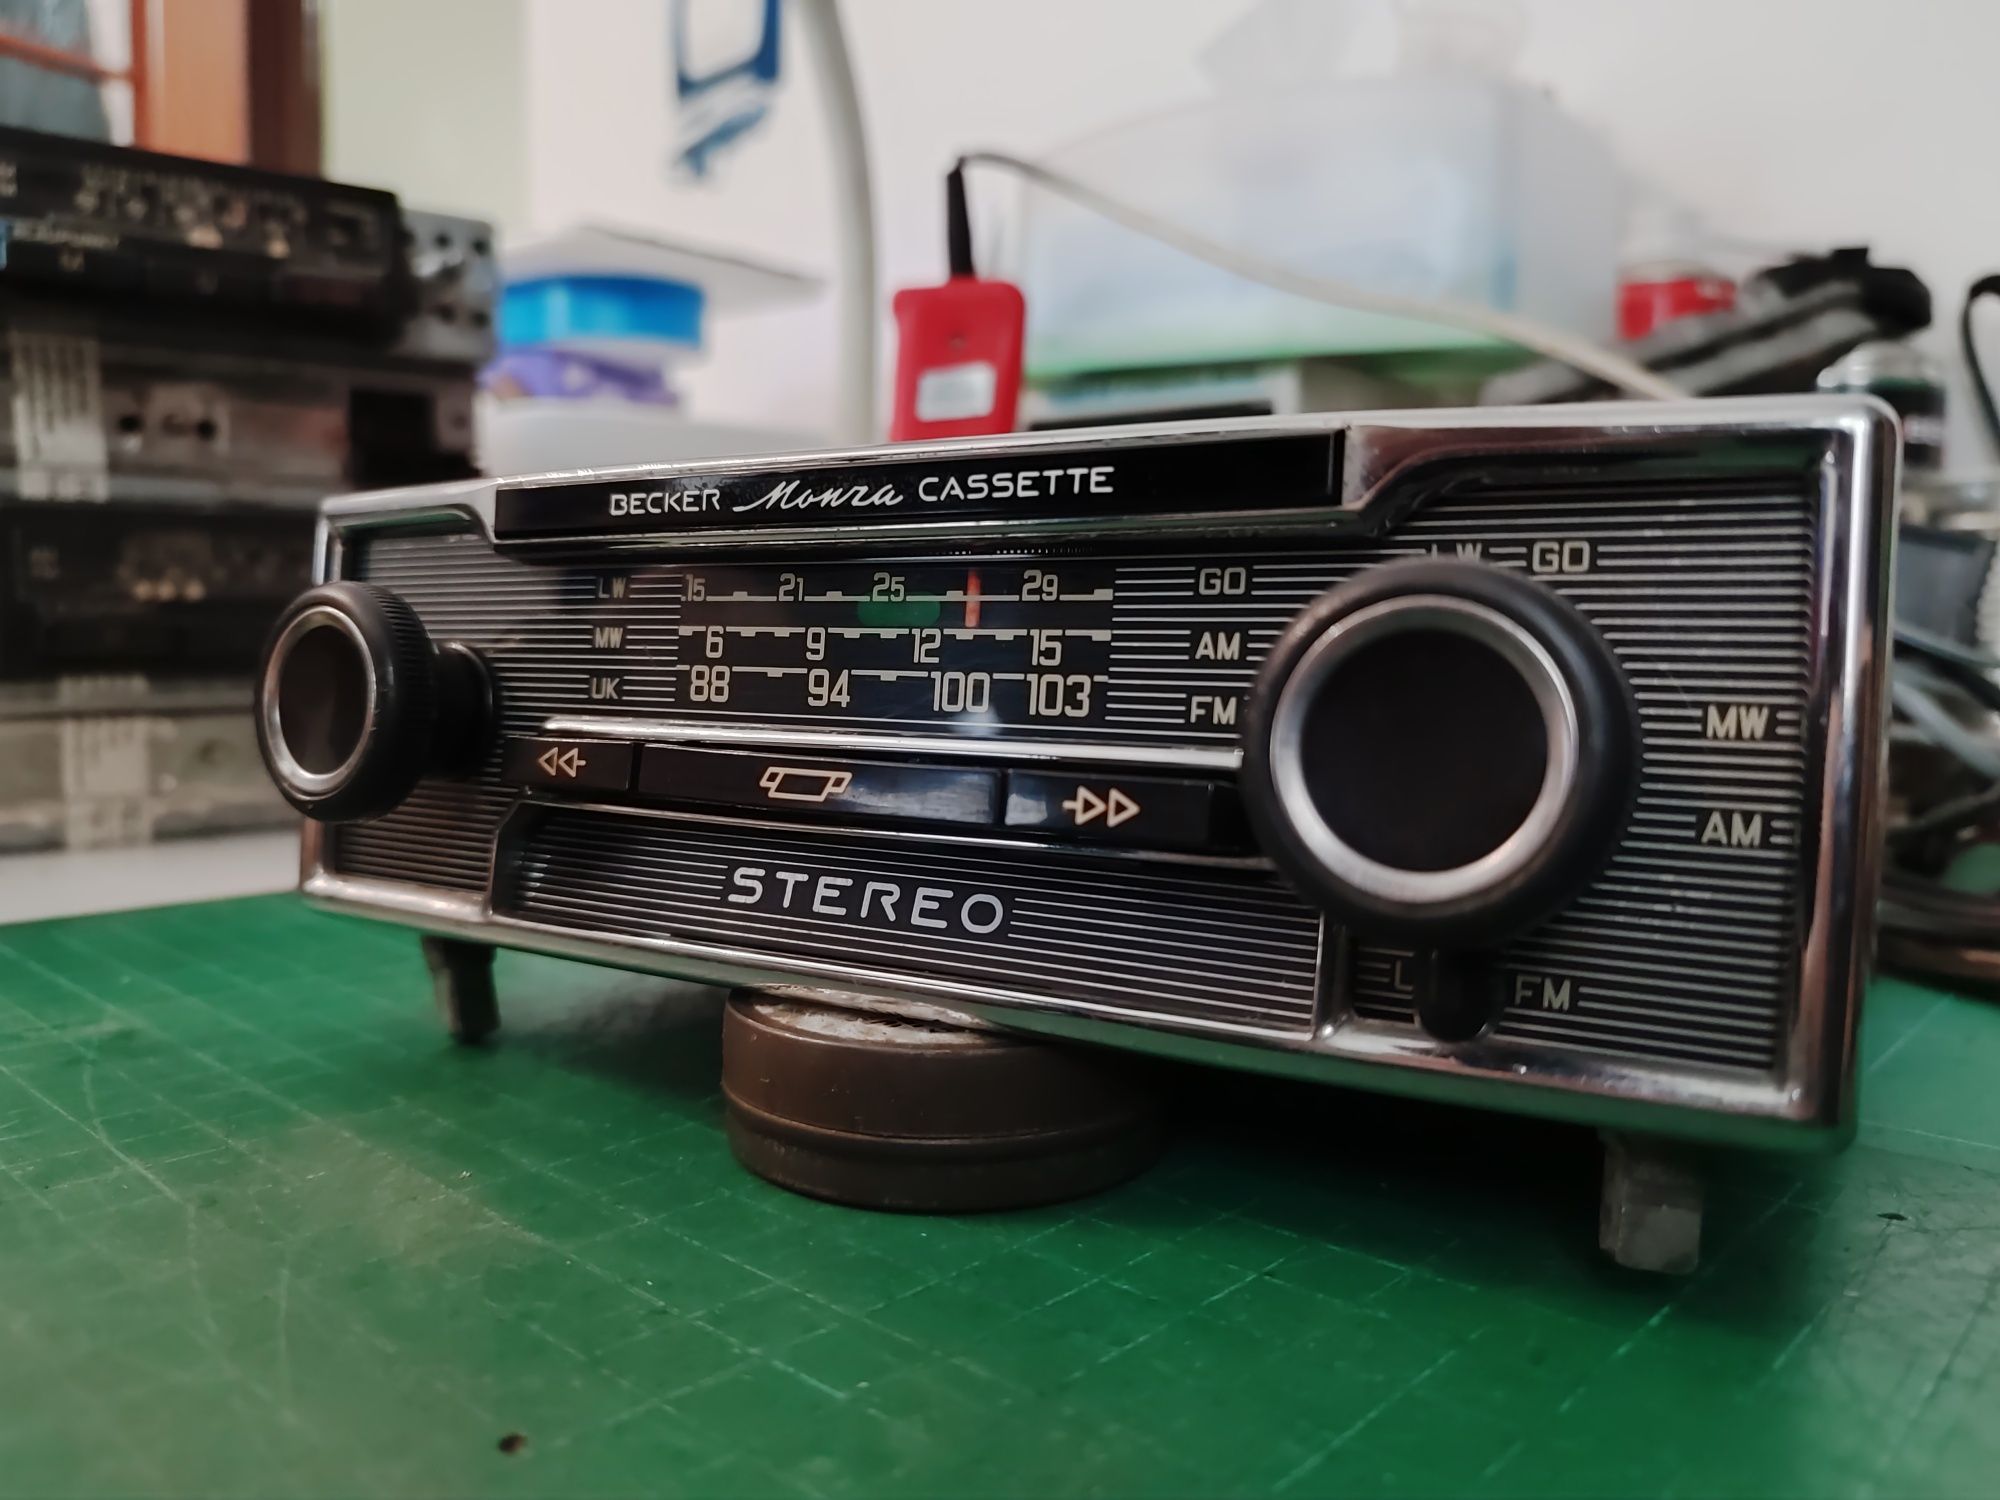 Becker Monza Cassete Stereo piękne radio Mercedes sprawne